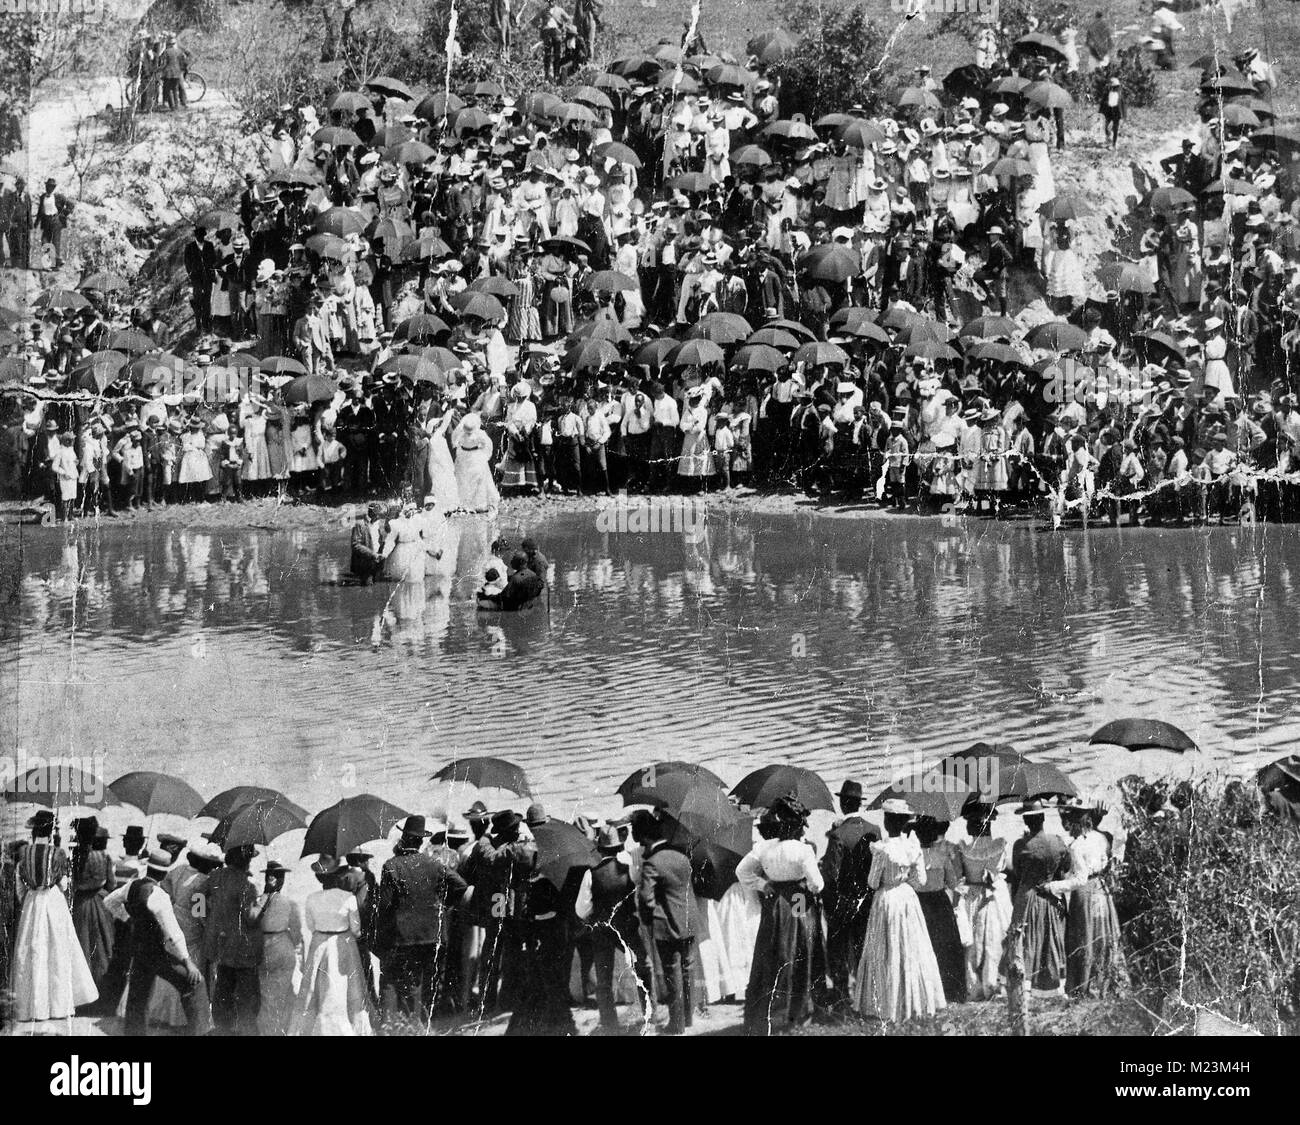 Un grand groupe de spectateurs afro-américaines se situe sur les rives du Bayou Buffalo d'assister à un baptême. De nombreux parasols sont présents indiquant un effort à fournir de l'ombre contre la chaleur du jour, vers 1900 Banque D'Images